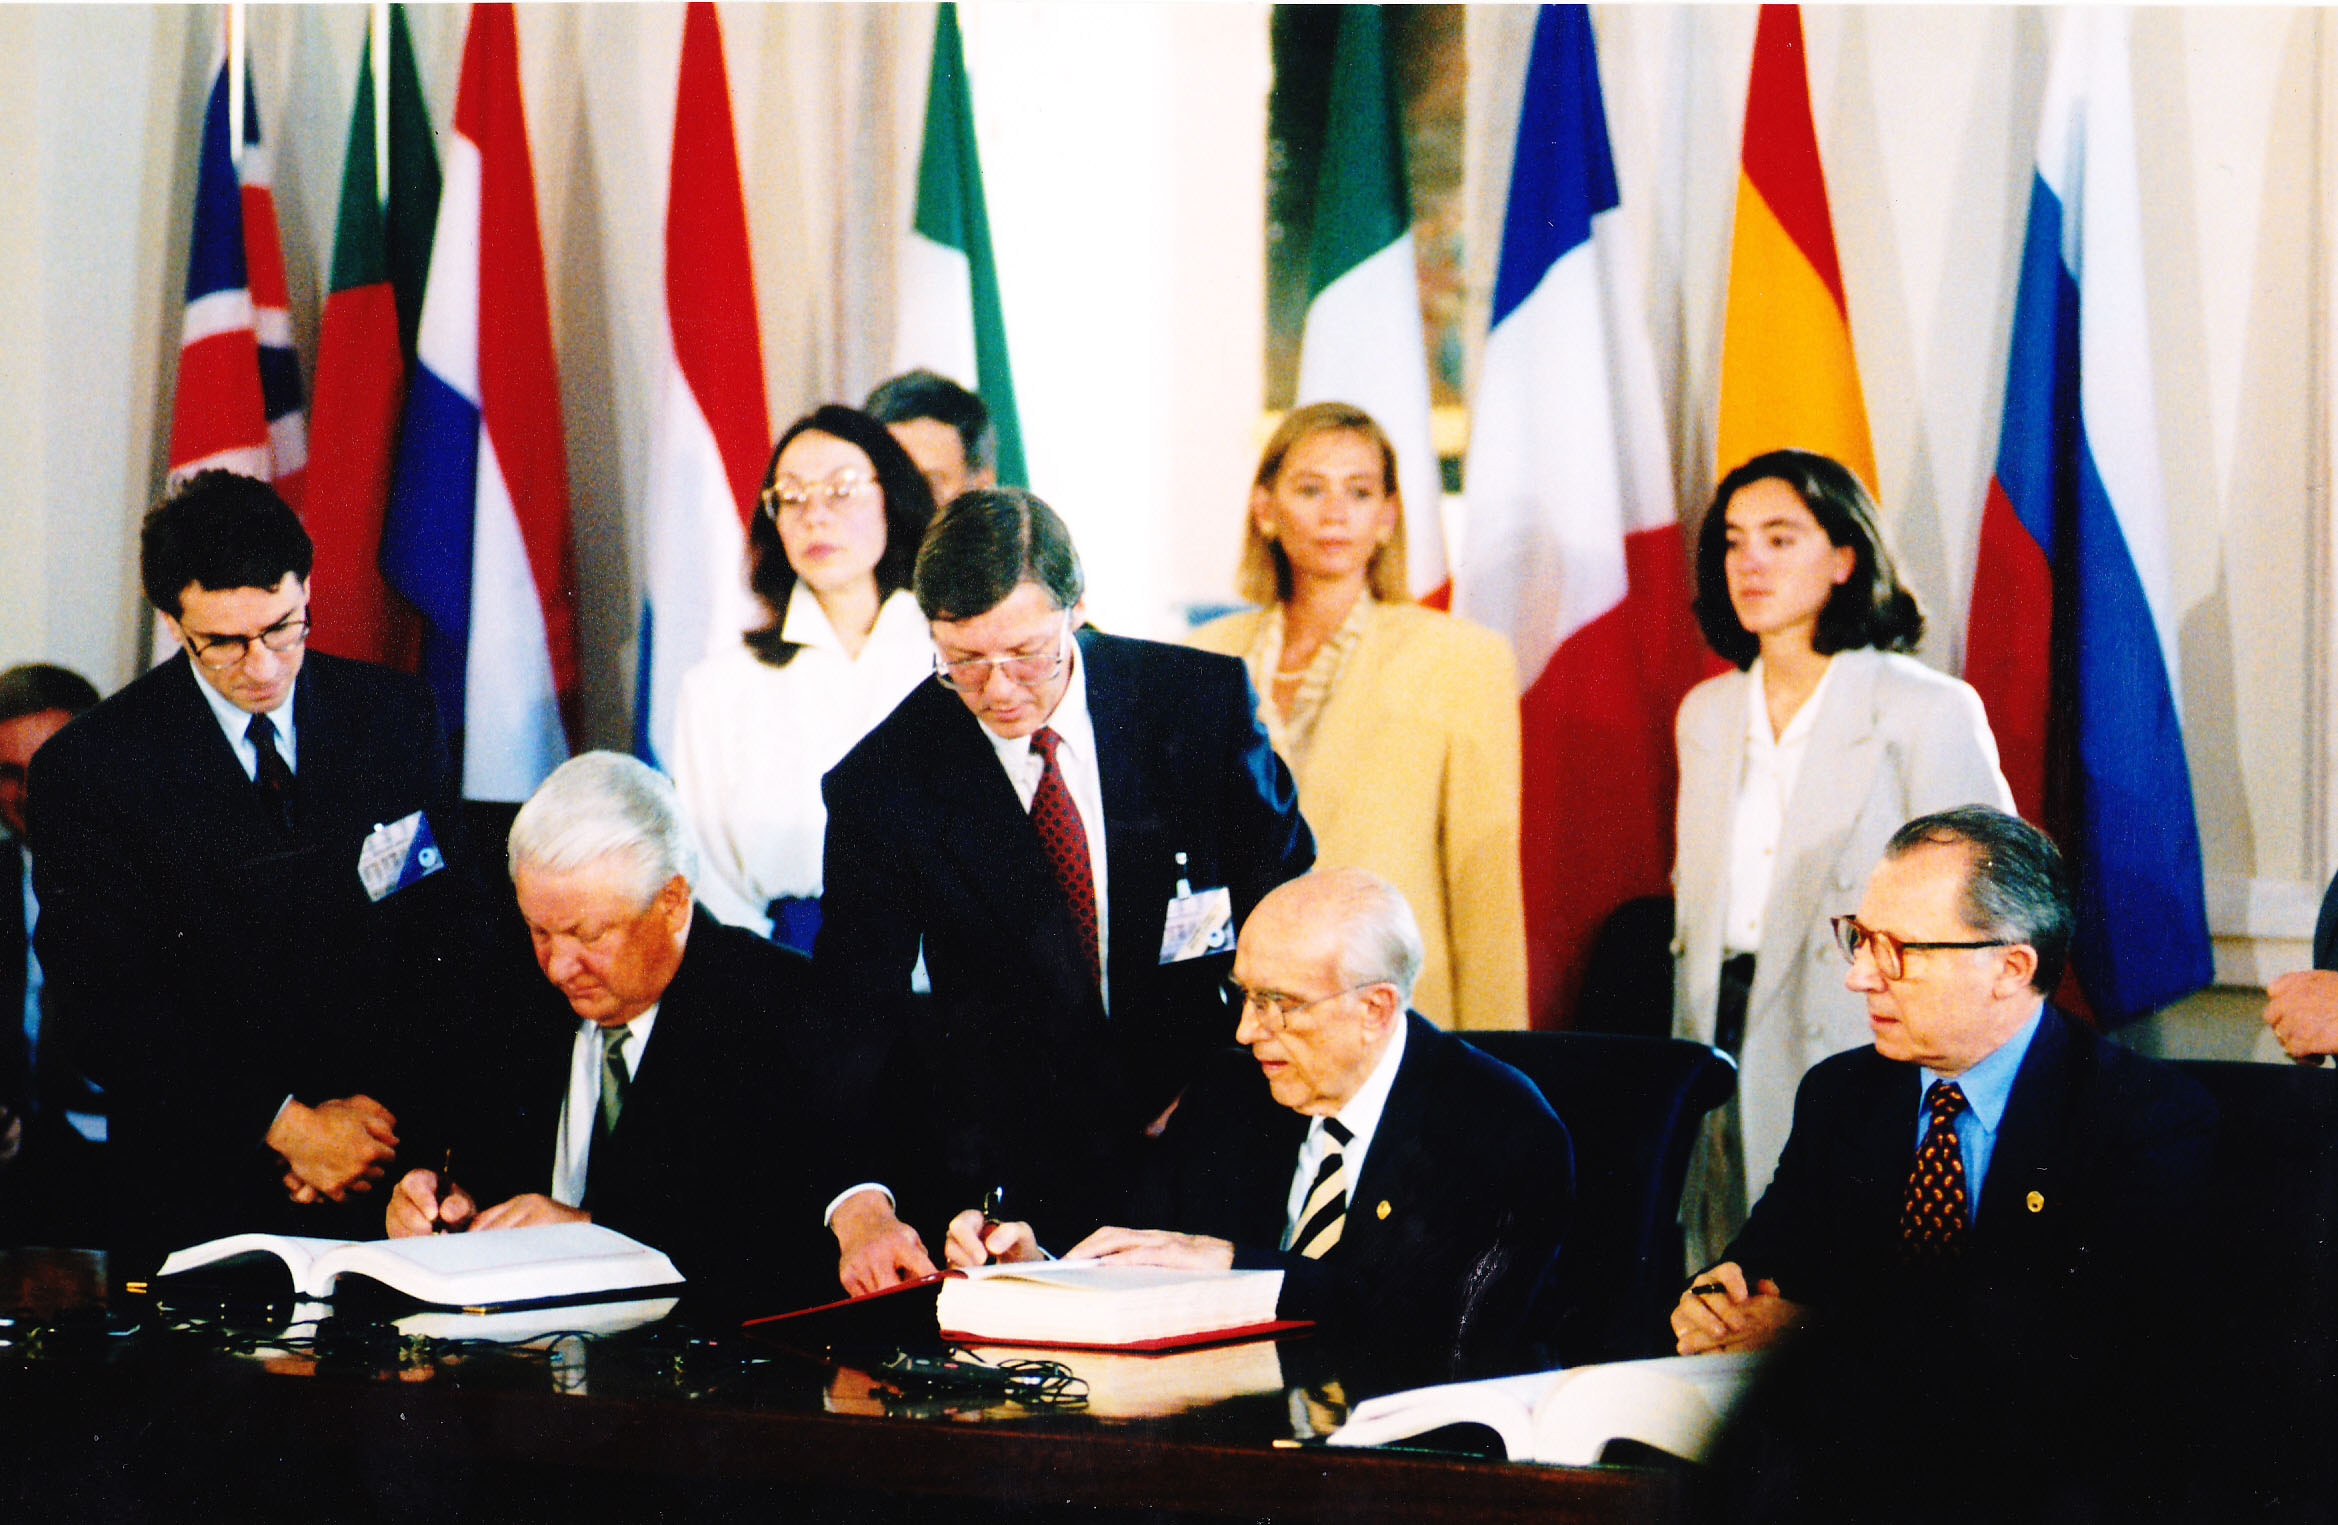 Отношения между европой и россией. Соглашение 1994 Россия ЕС. Соглашение о партнерстве и сотрудничестве между ЕС И Россией 1997. Международное сотрудничество. Соглашение о партнерстве и сотрудничестве 1994.